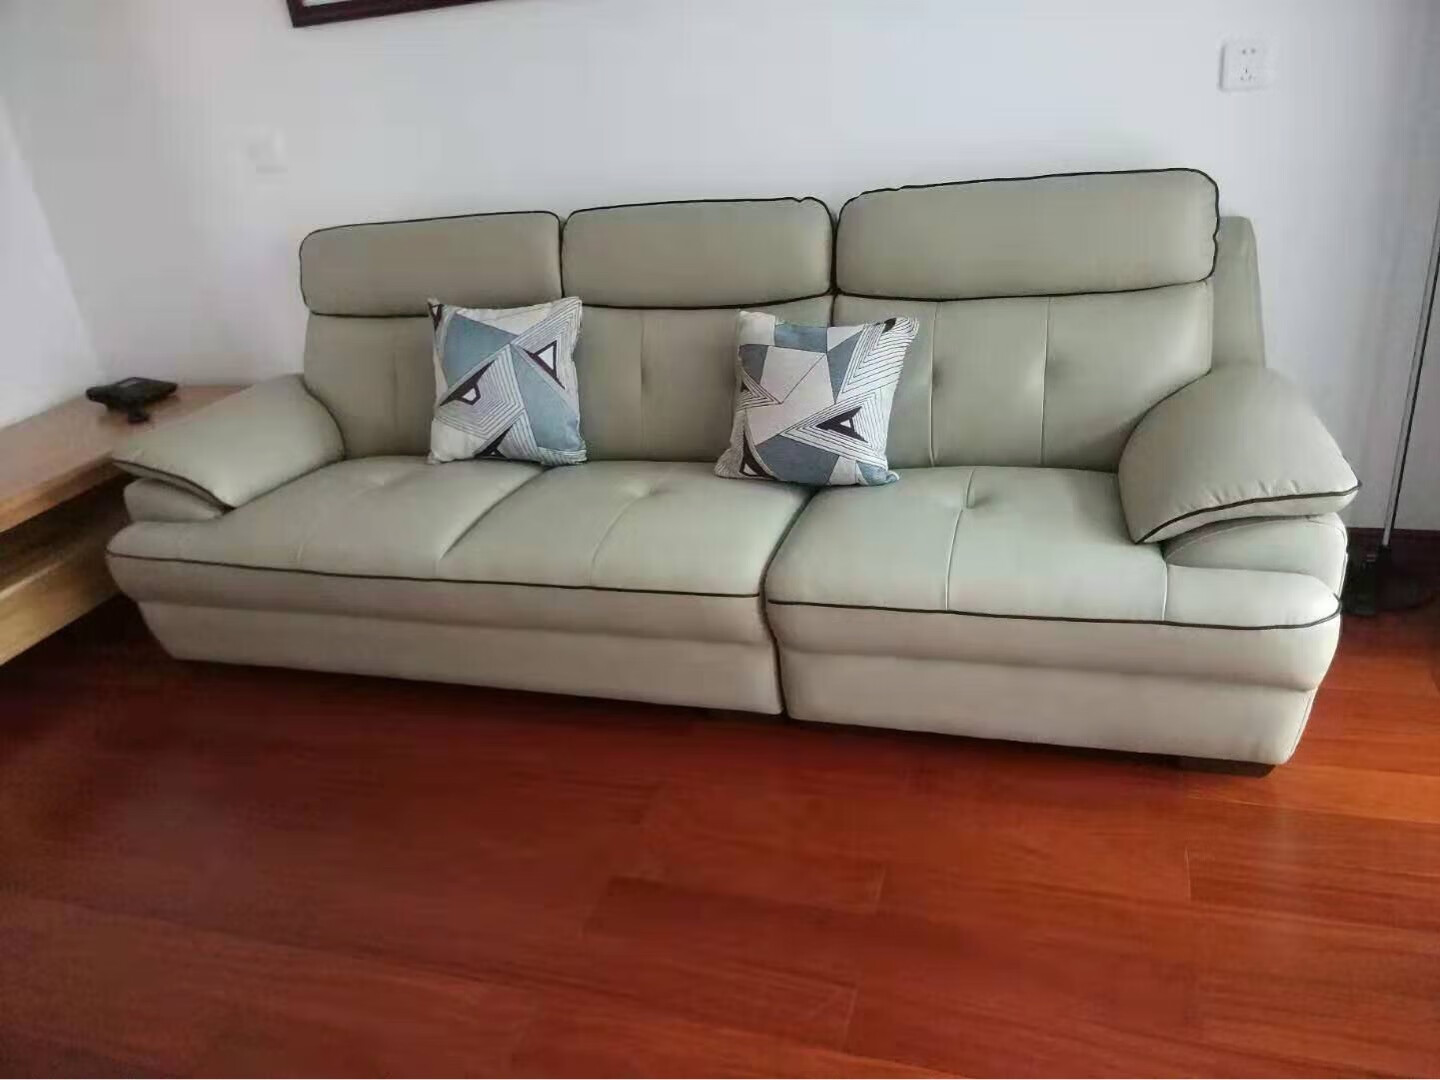 沙发收到了 质量很好 软硬适中 坐着很舒服 颜色也很好看 非常喜欢 大品牌值得信赖